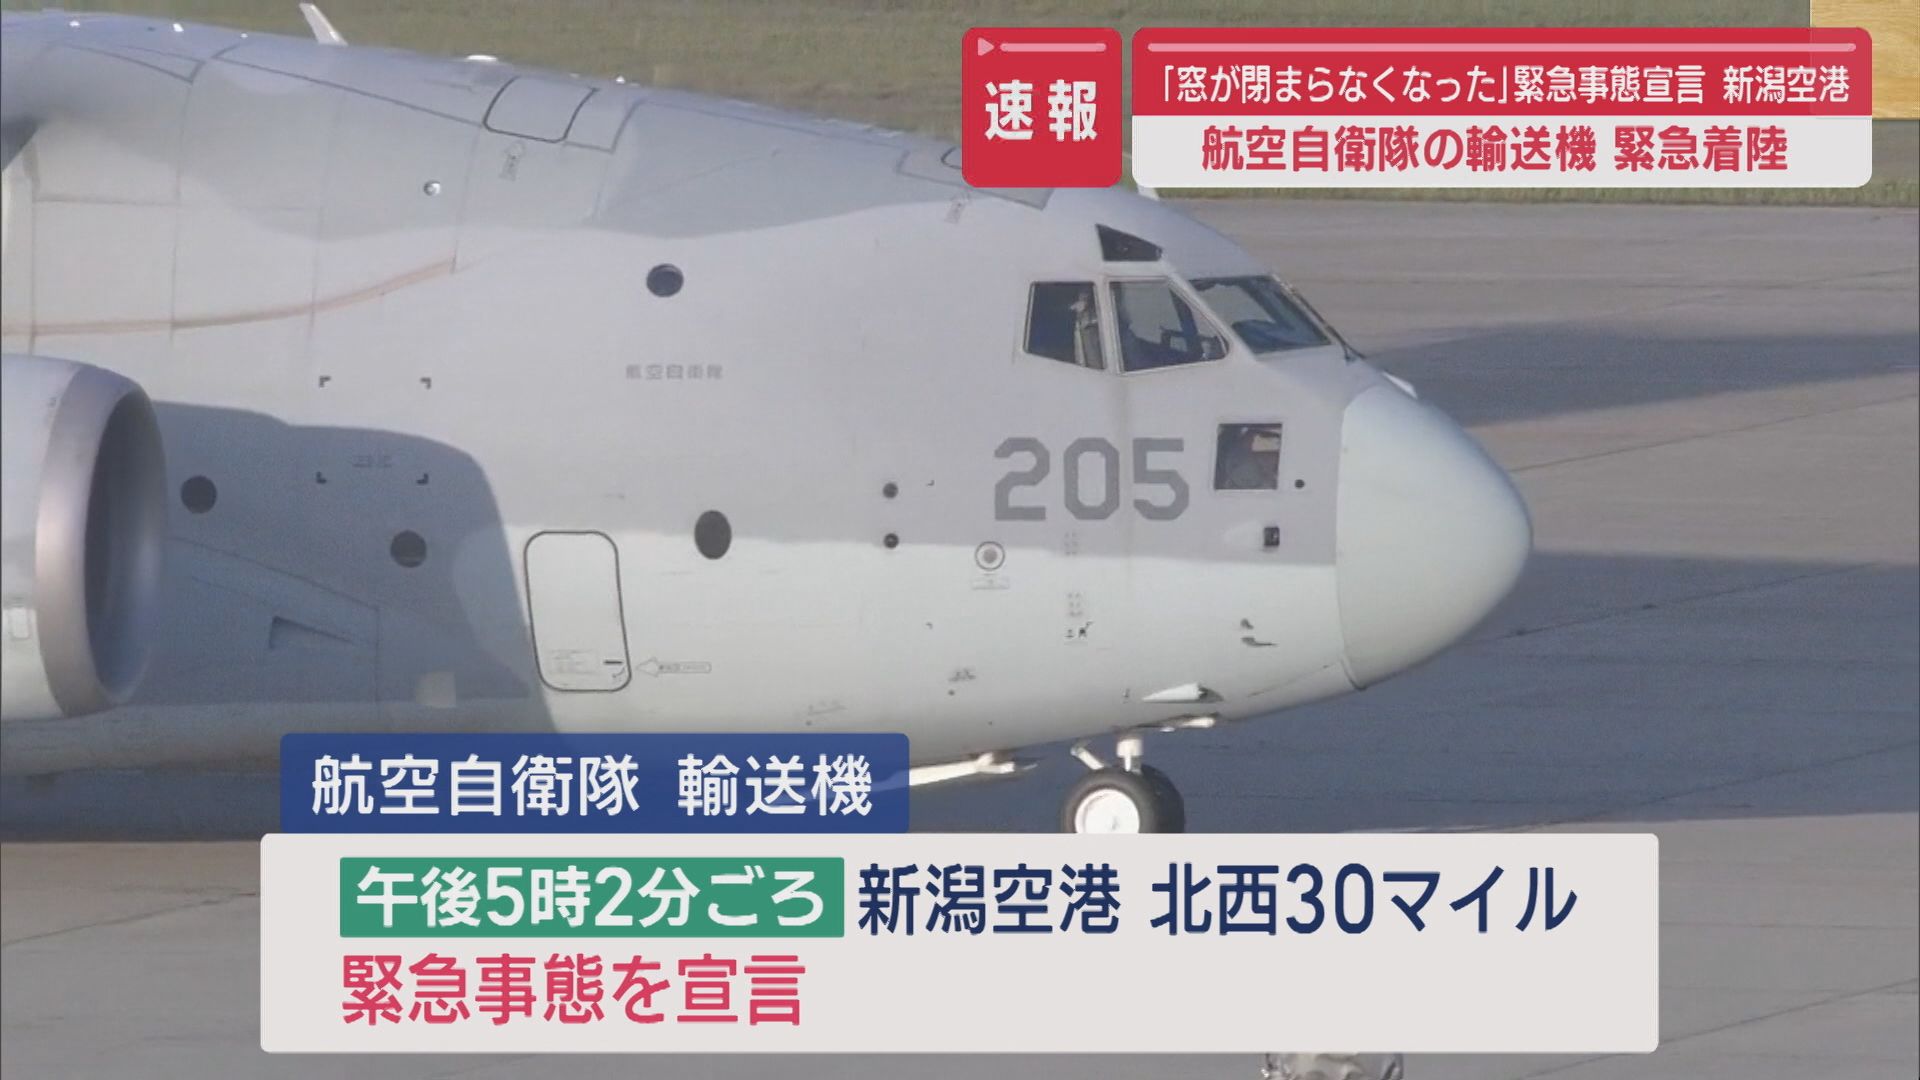 【続報】空自･輸送機が新潟空港に緊急着陸「窓が閉まらなくなった」と緊急事態宣言【新潟】